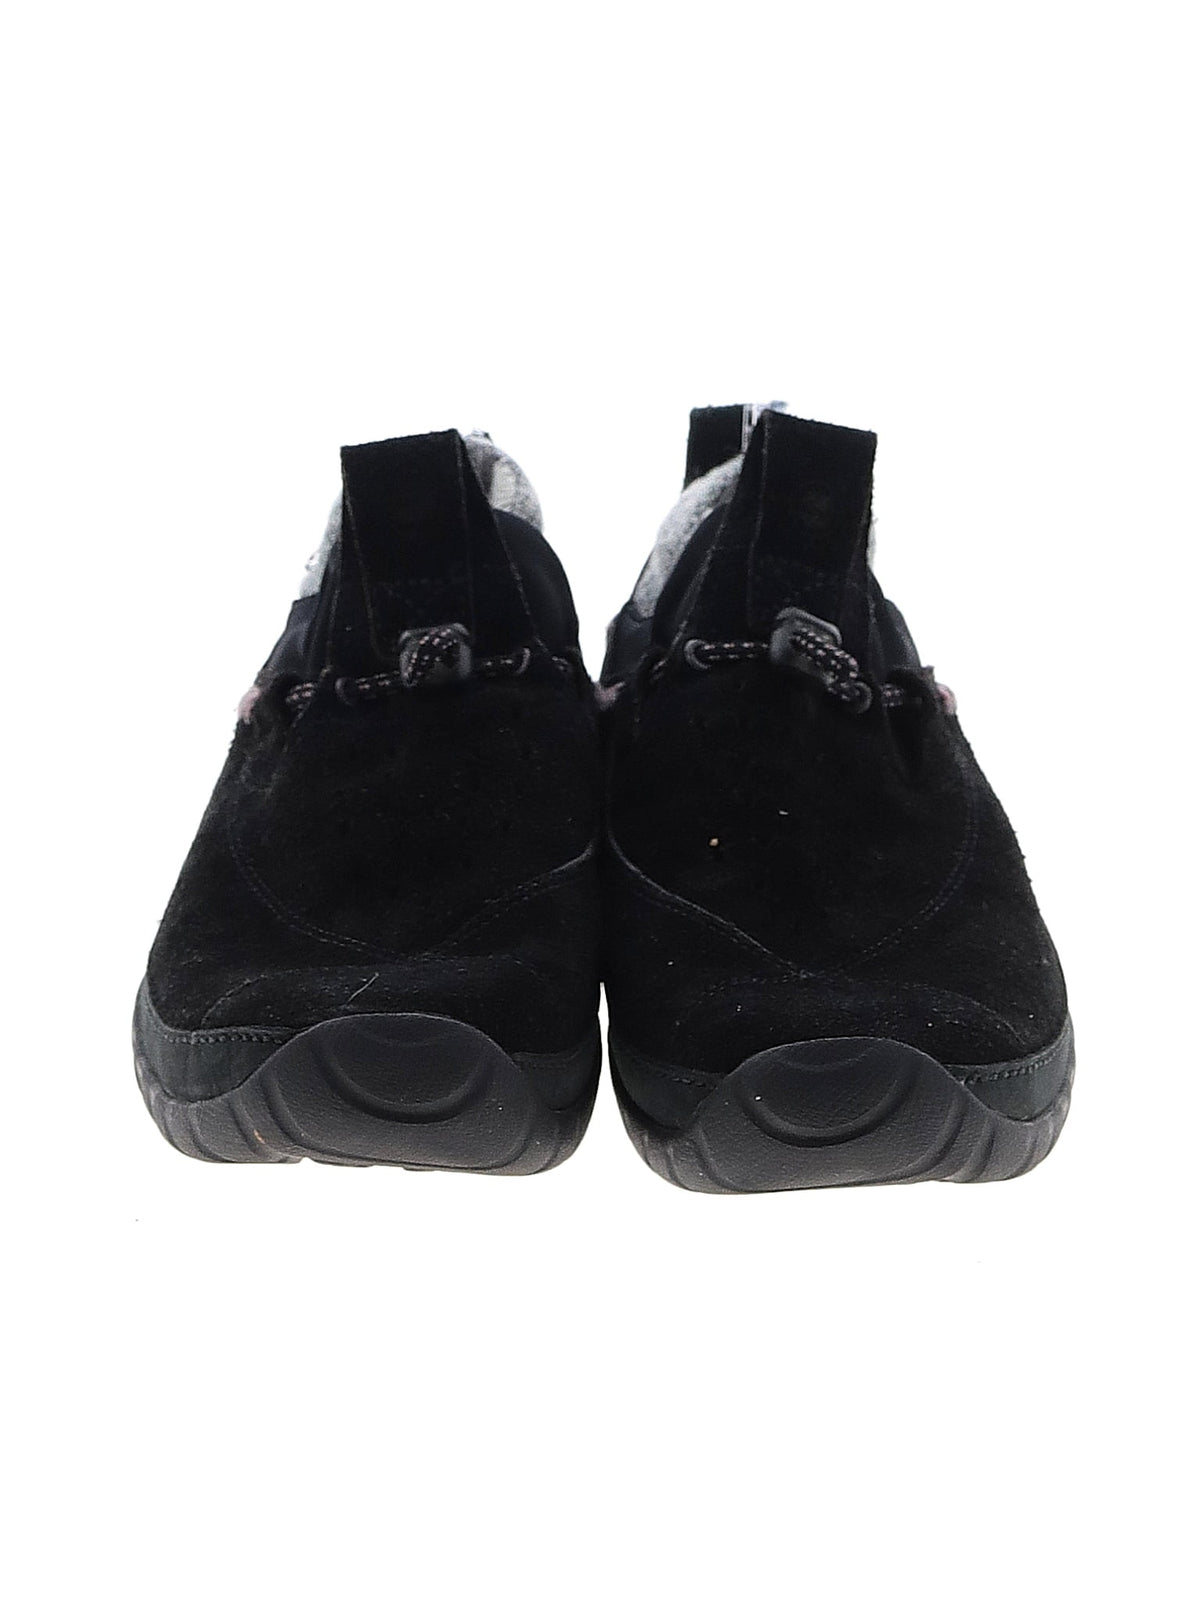 Sneakers shoe size - 9 1/2